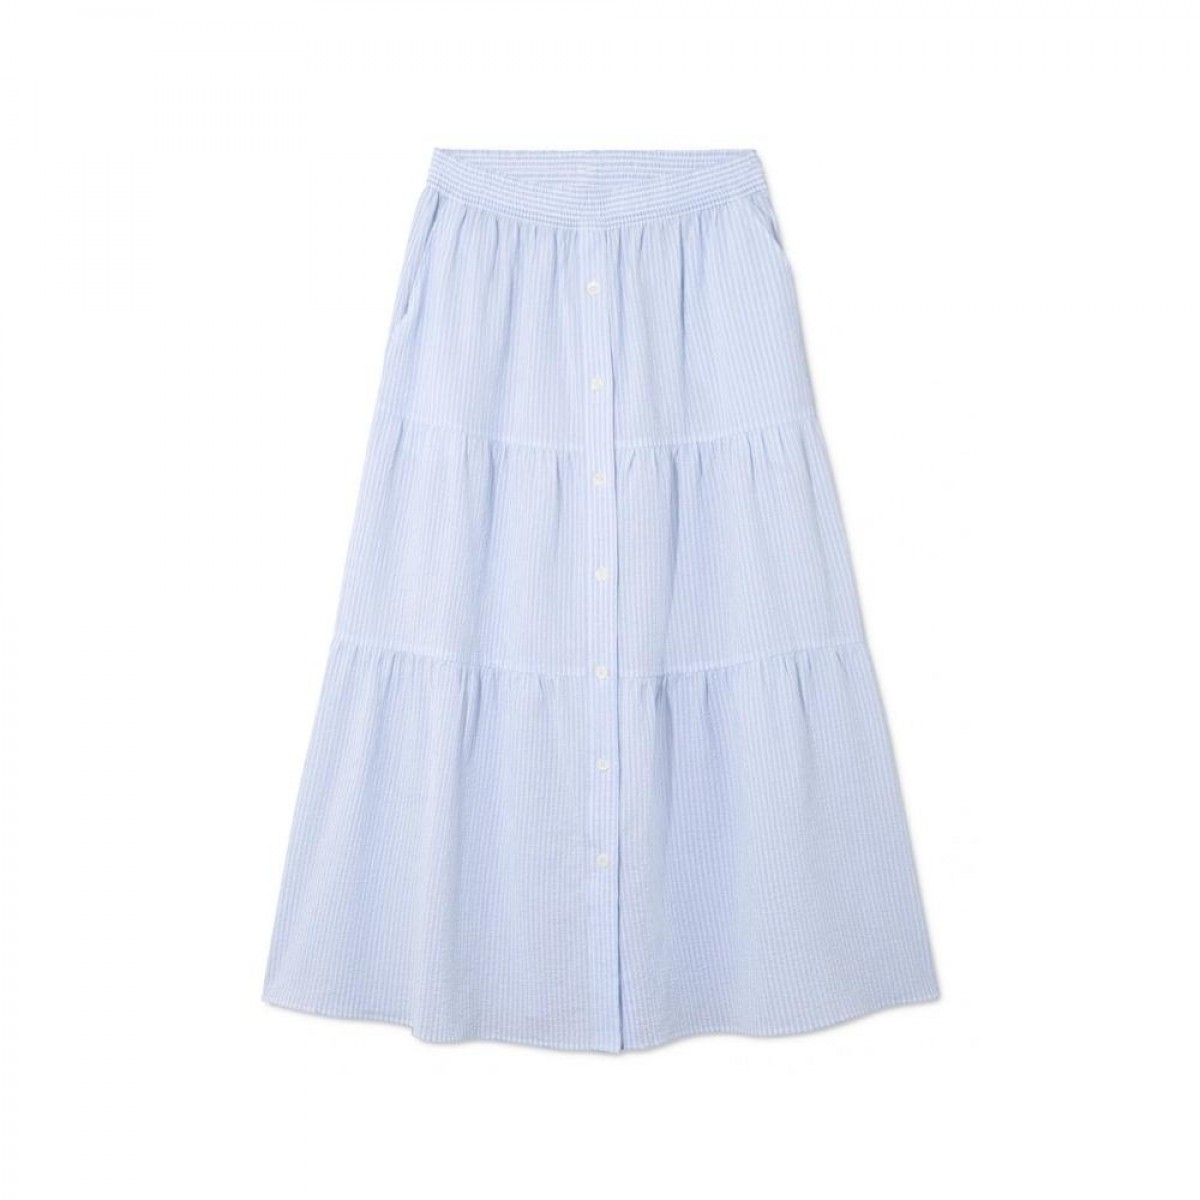 phi skirt - light blue / white stripe - front